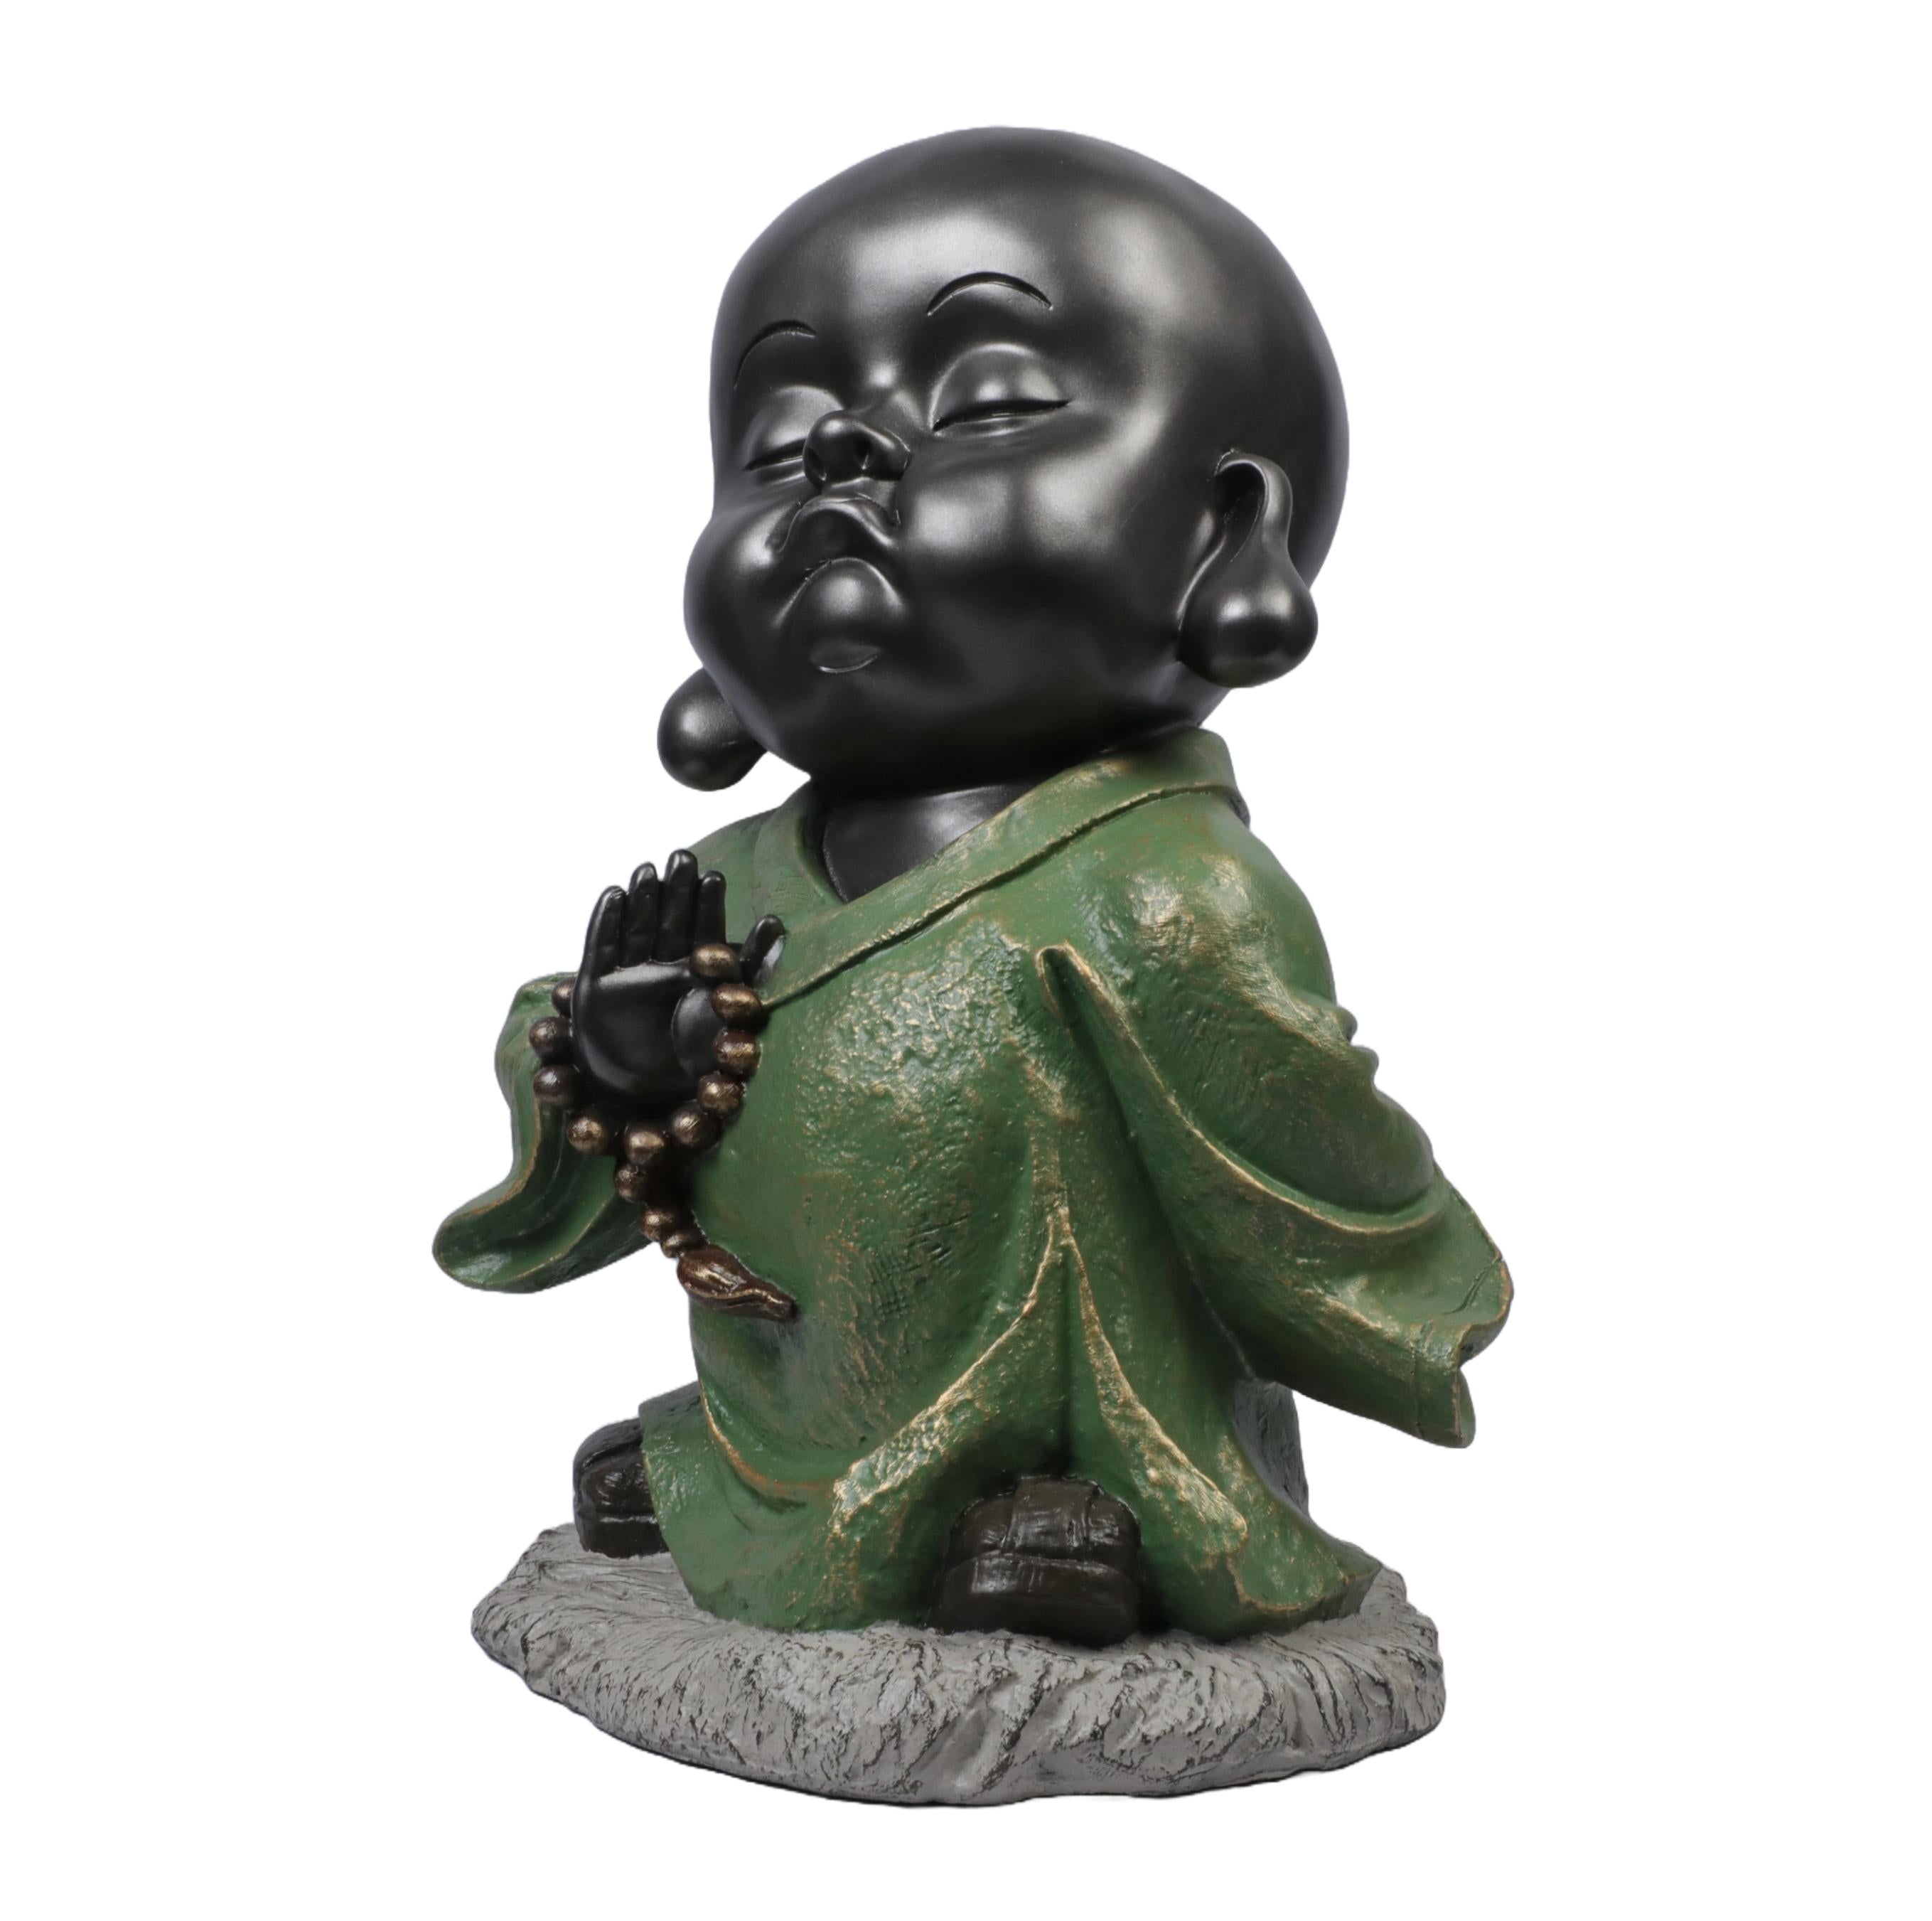 Ashnam Baby Monk Statue Sharing Divine Blessings - Black Green, 32 Cm